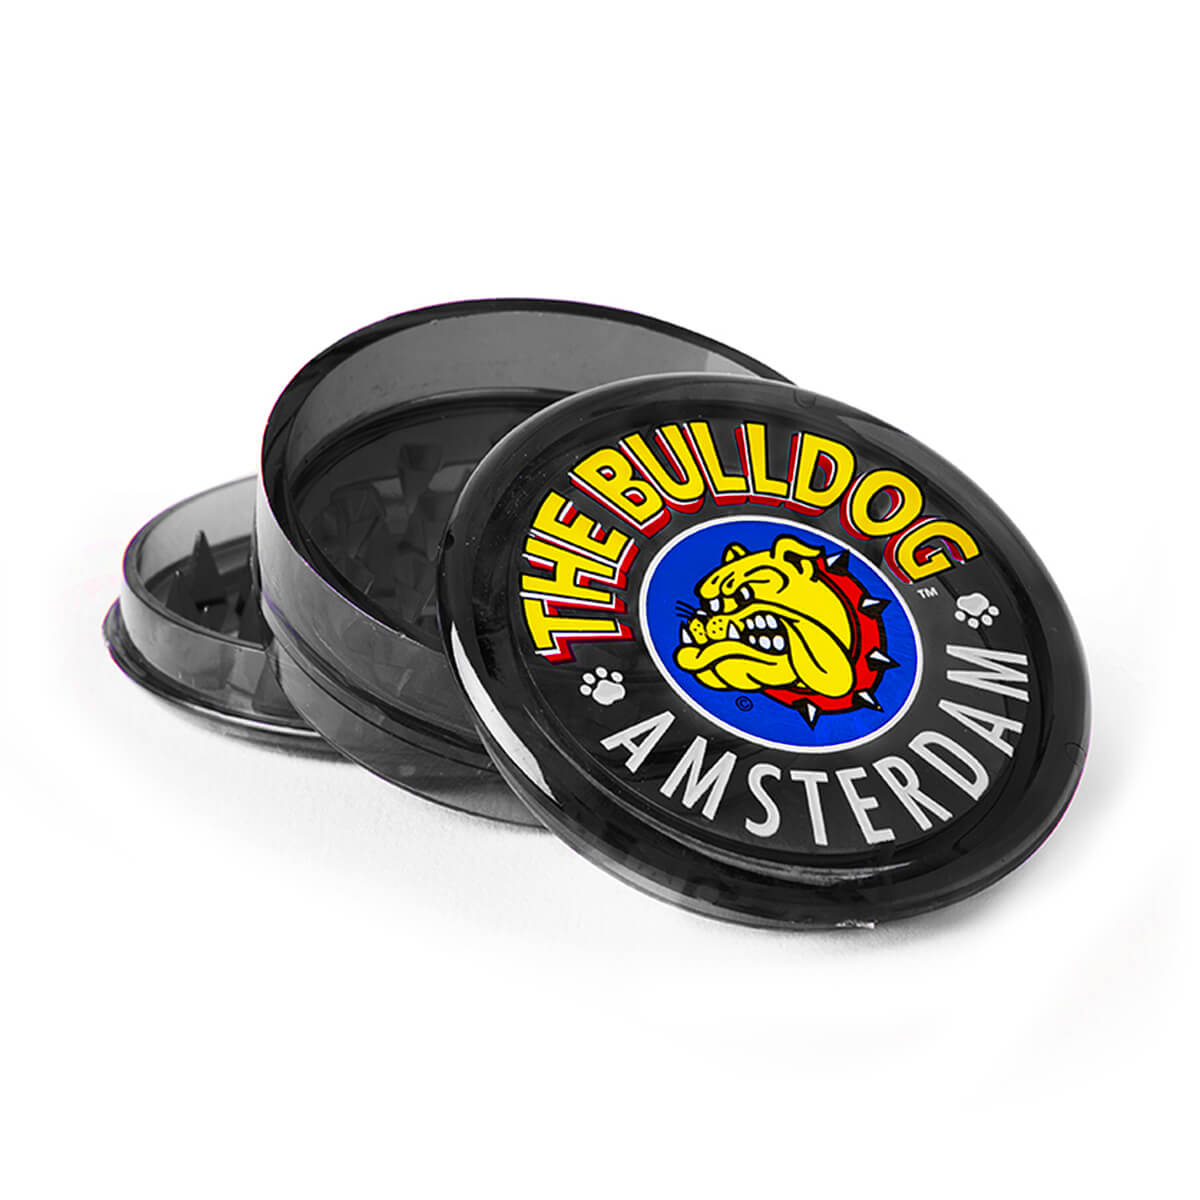 Wholesale The Bulldog Original Black Amsterdam Metal Grinder